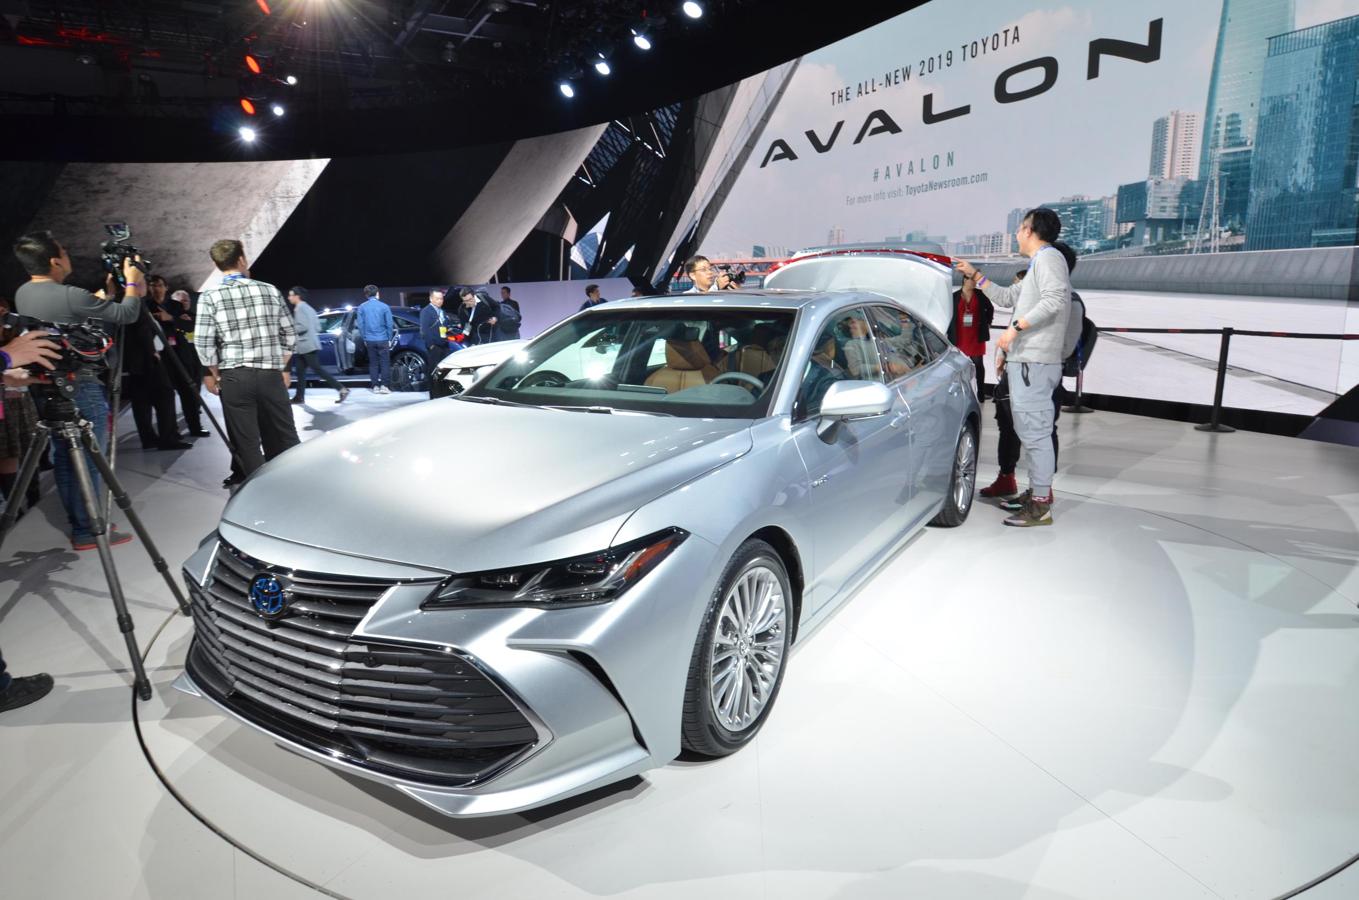 El Toyota Avalon 2019 es la nueva berlina grande la marca y puede equipar dos mecánicas: una gasolina y otra híbrida.